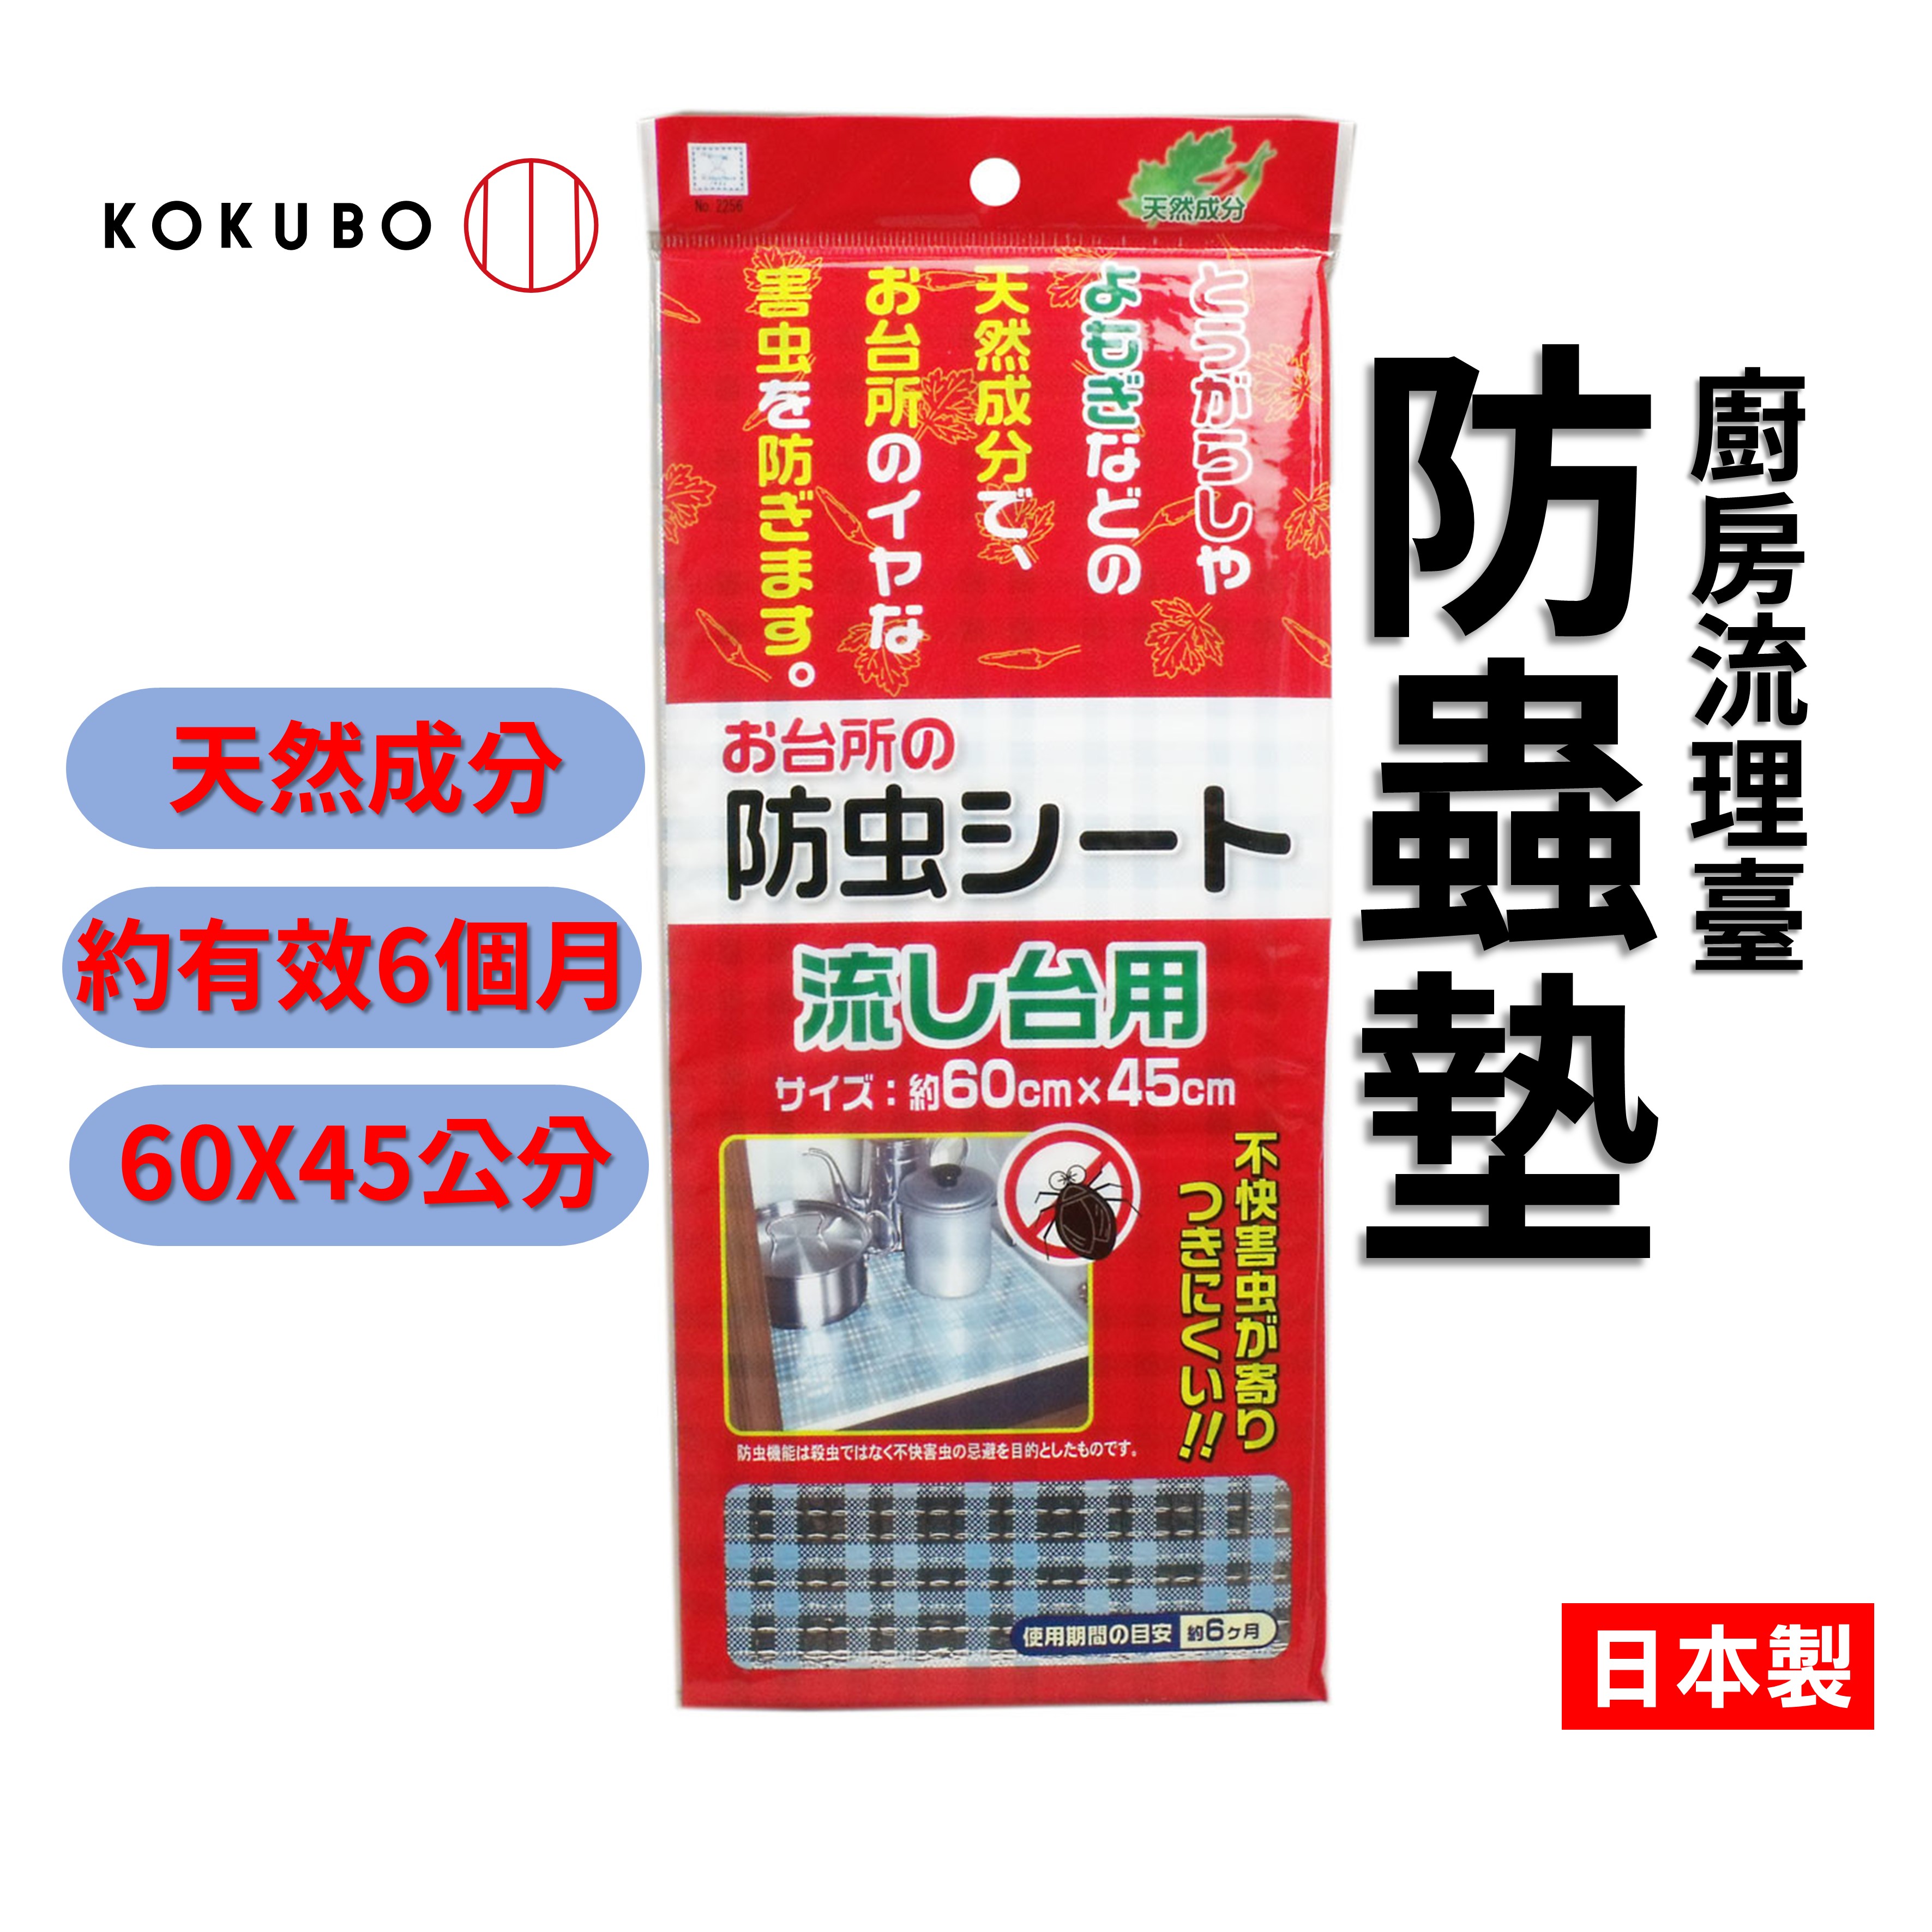 日本 廚房流理臺防蟲墊 櫥櫃墊 60x45cm 天然防蟲成分